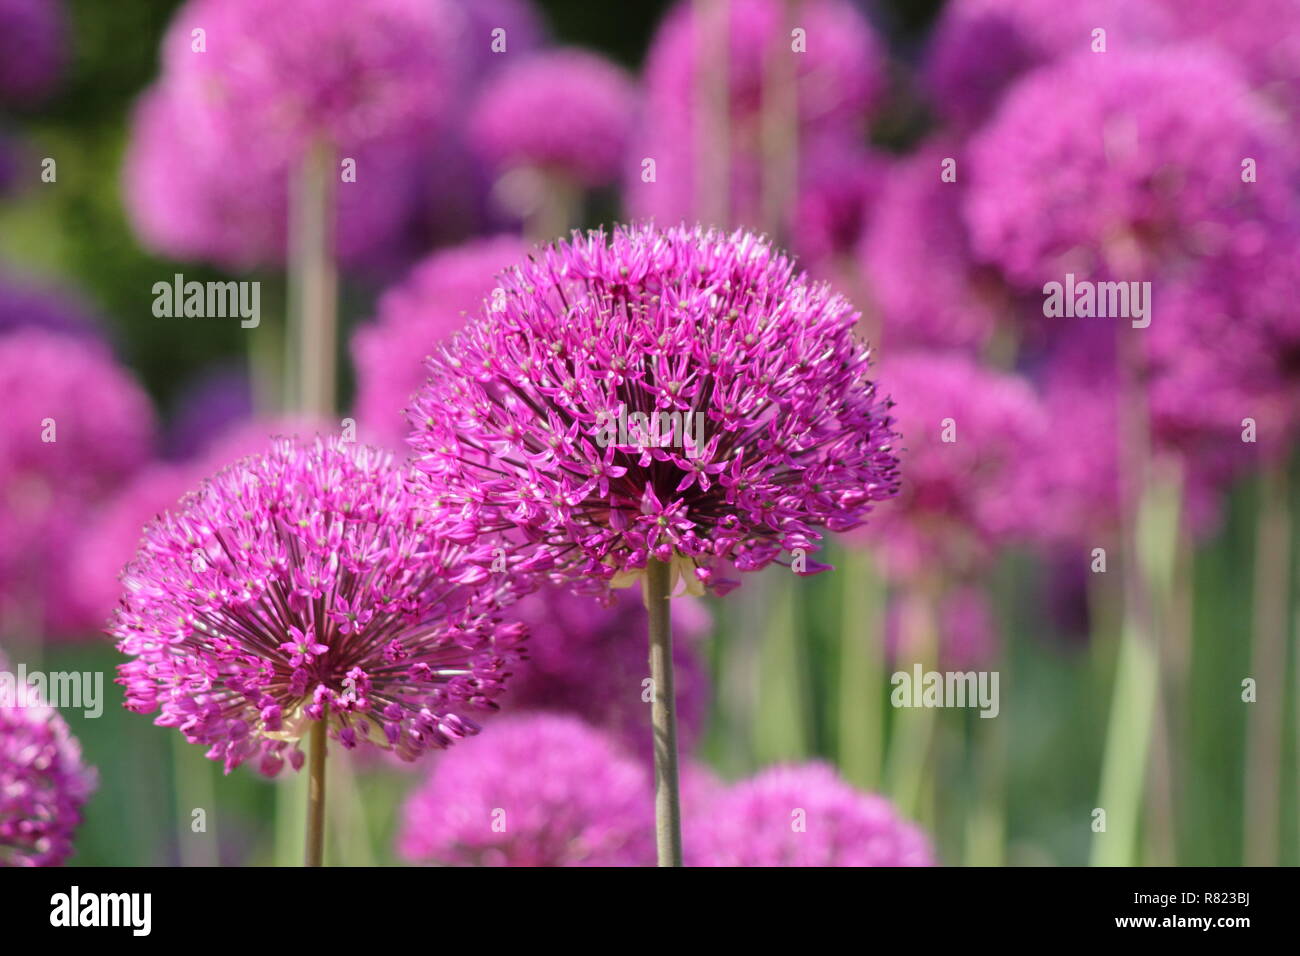 Allium Hollandicum 'Purple Sensation', riesige ornamentale Zwiebeln, genannt auch holländische Knoblauch, Mai, UK Garten Stockfoto